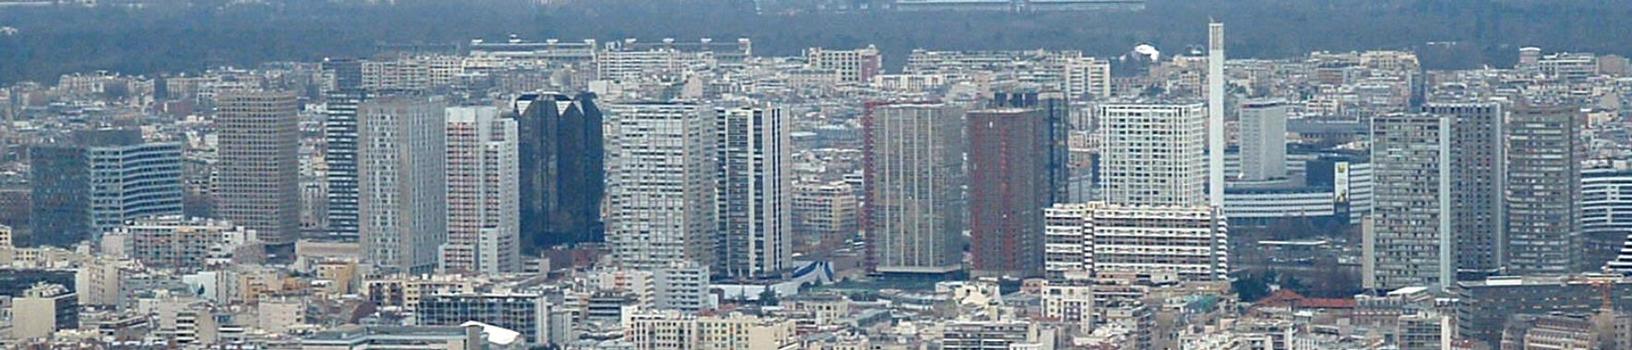 Paris: Le quartier Front de Seine (XVème) composé essentiellement d'immeubles de 90 à 105 m de hauteur